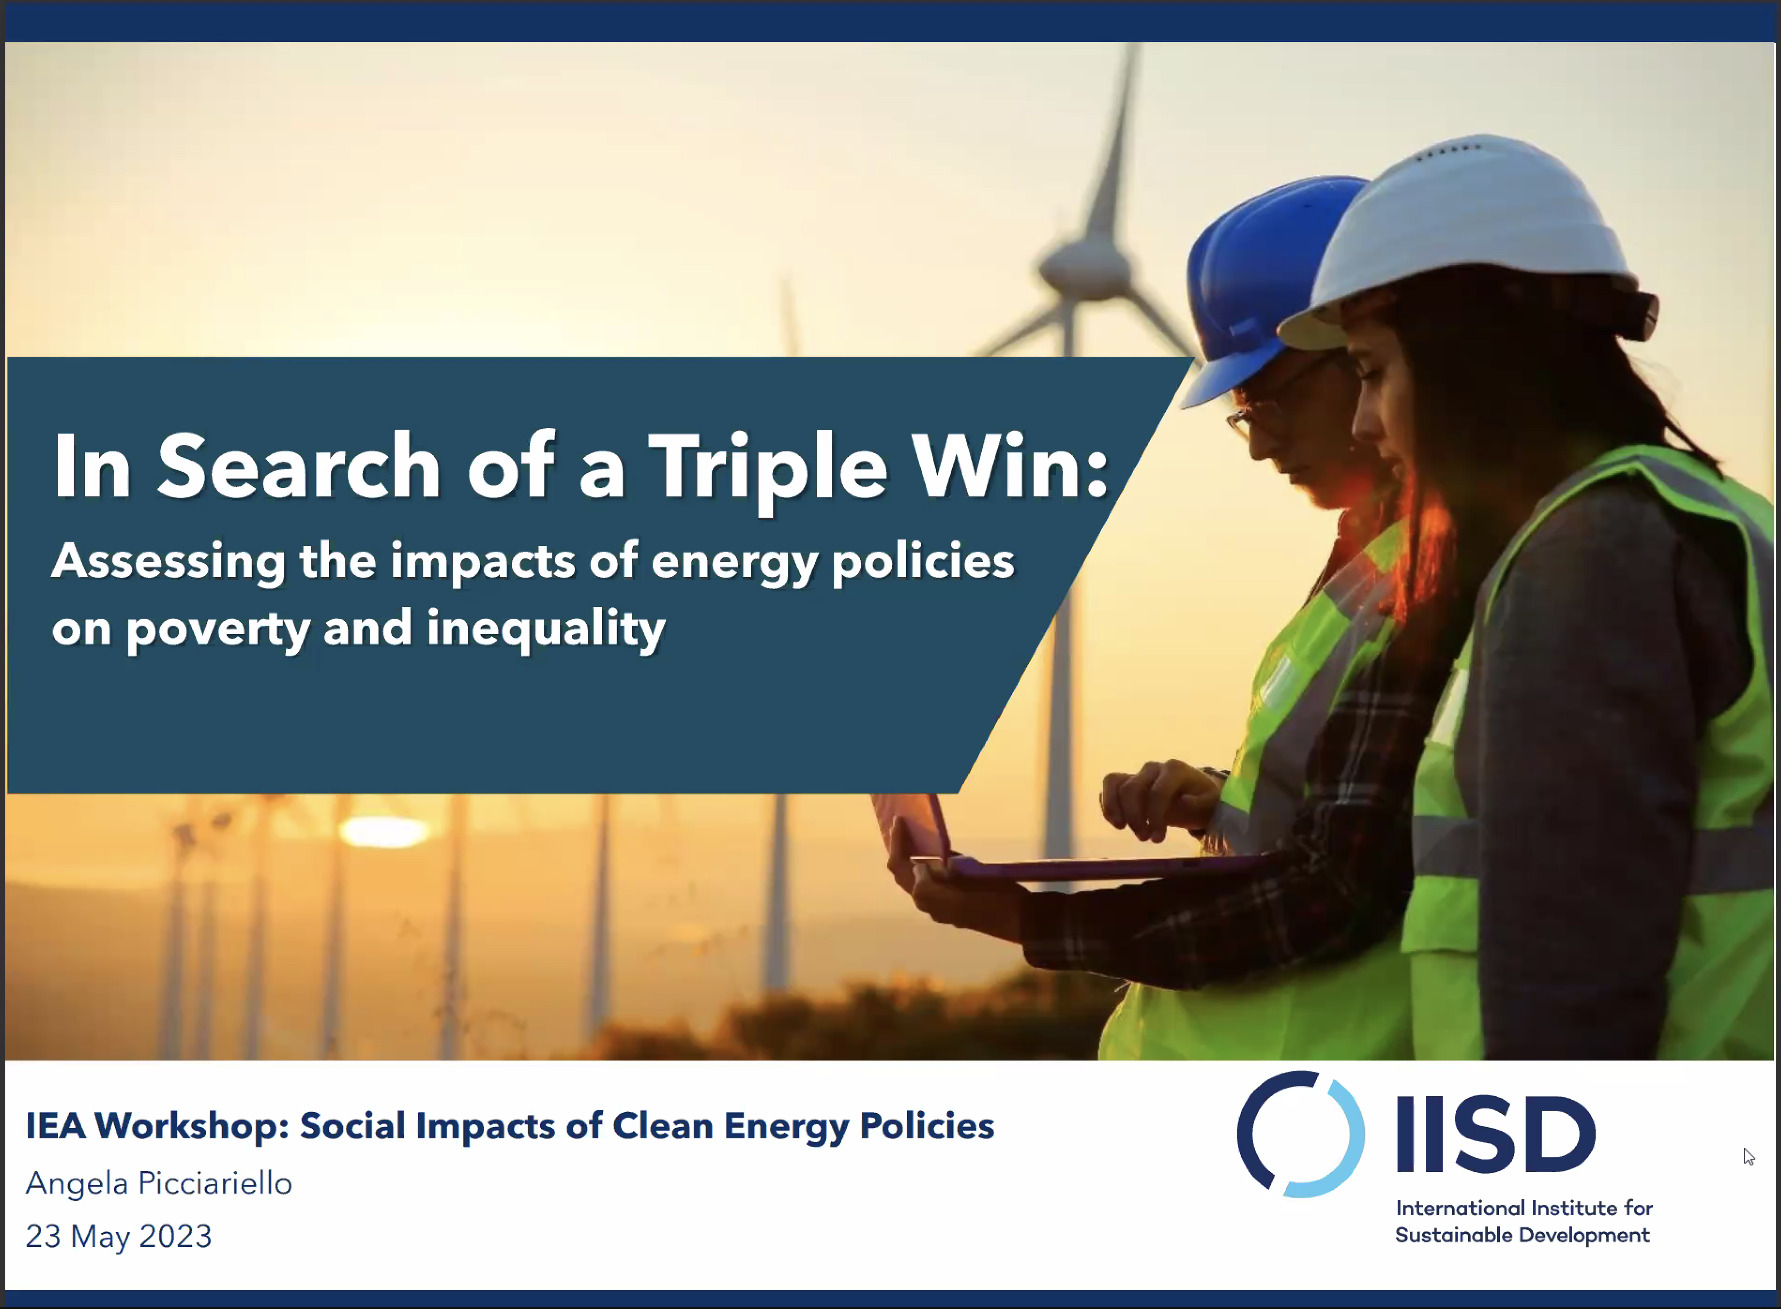 L'impatto sociale delle politiche per la transizione energetica